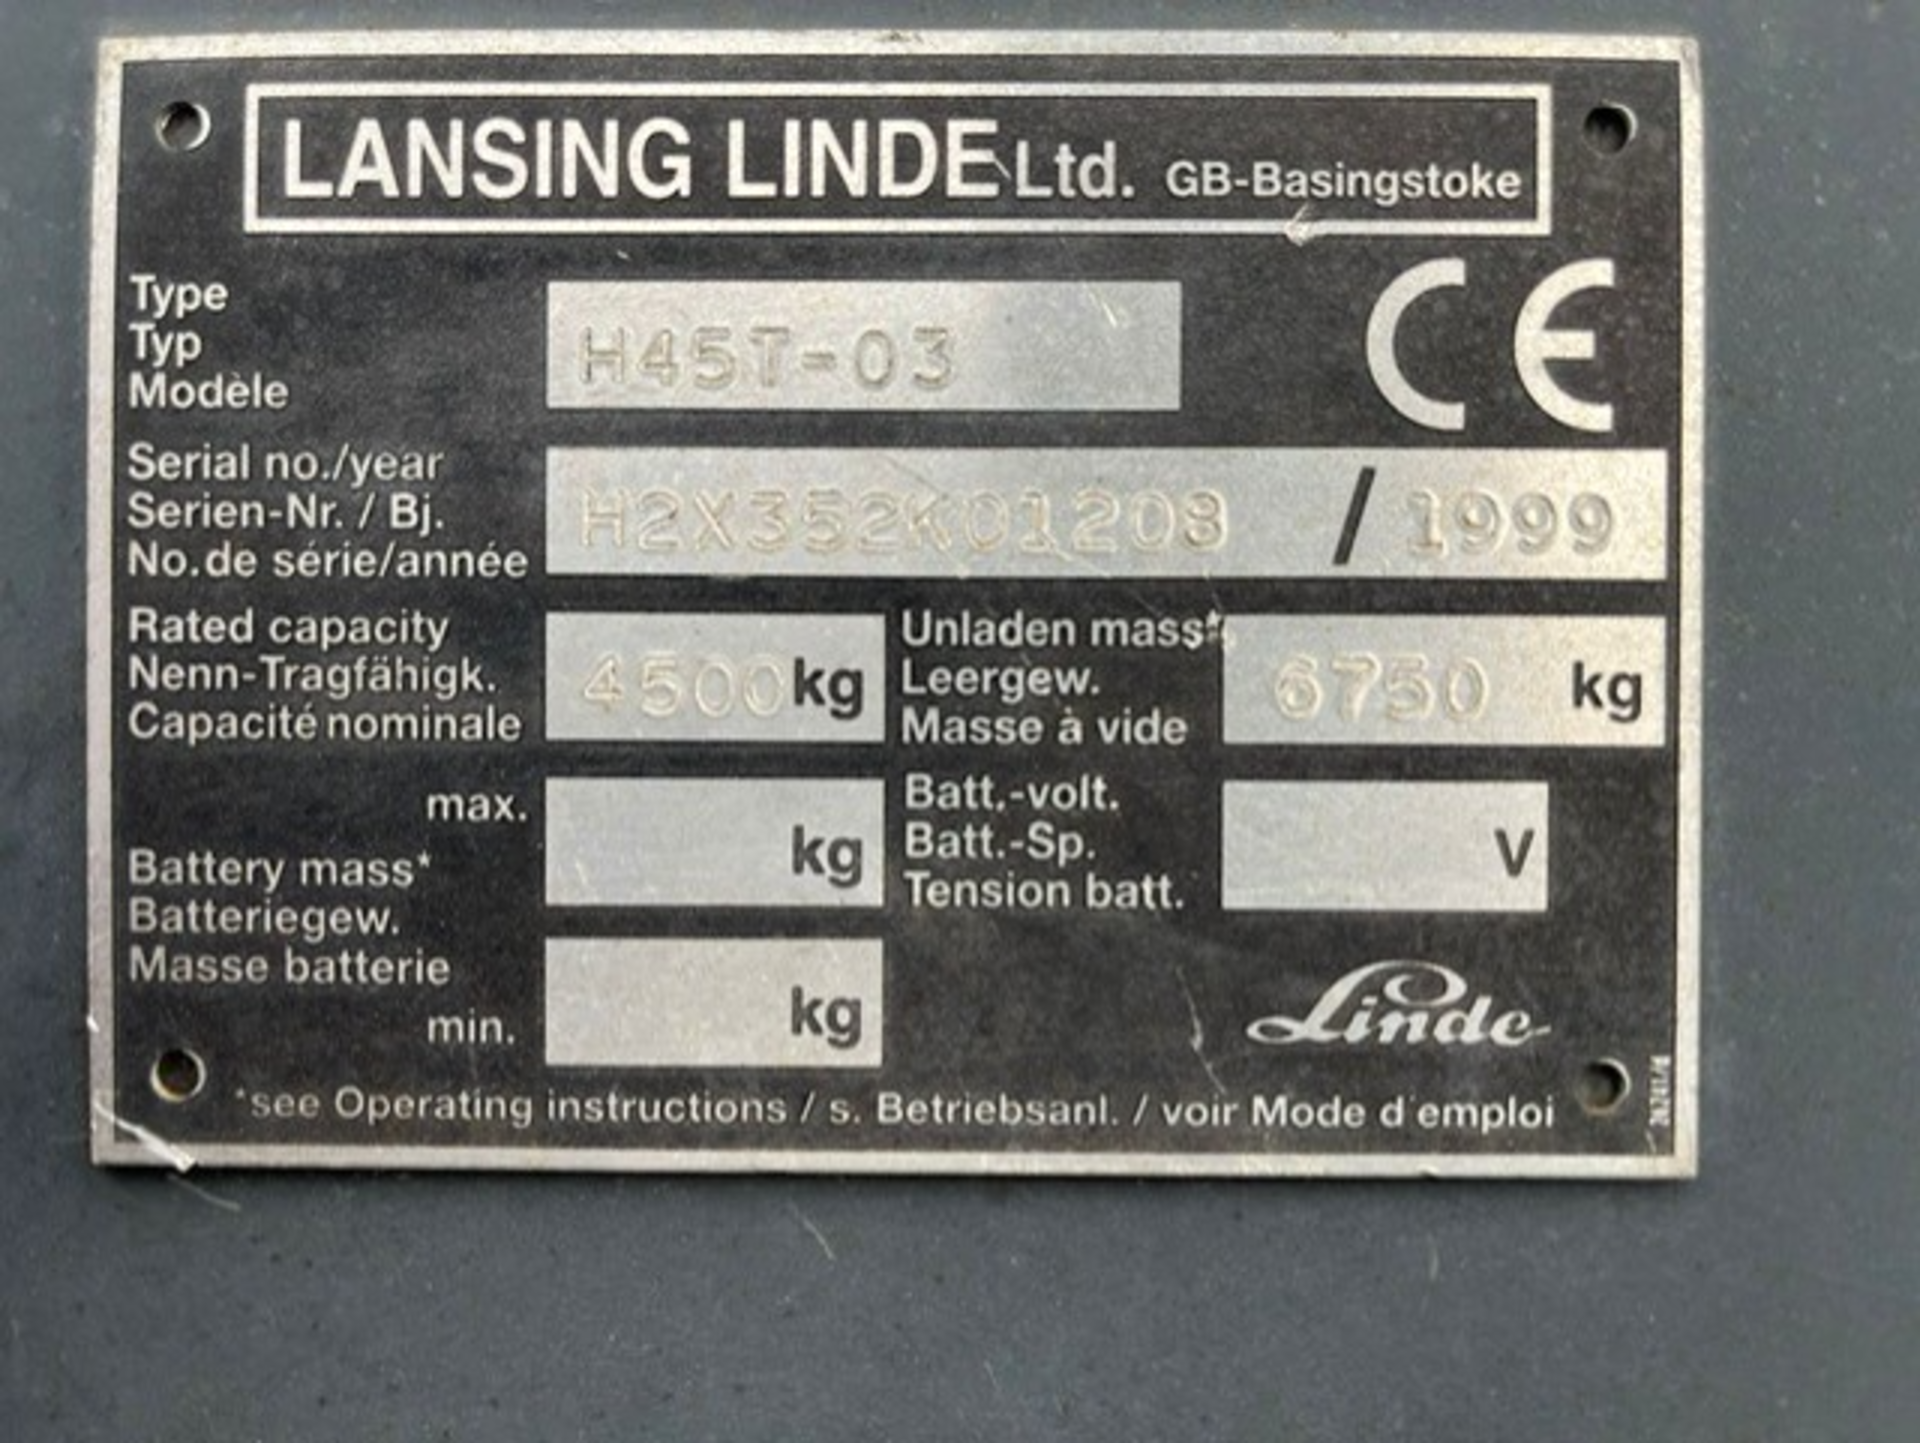 1999 LINDE - H45T, 4.5 Tonne Gas Forklift - Image 3 of 8